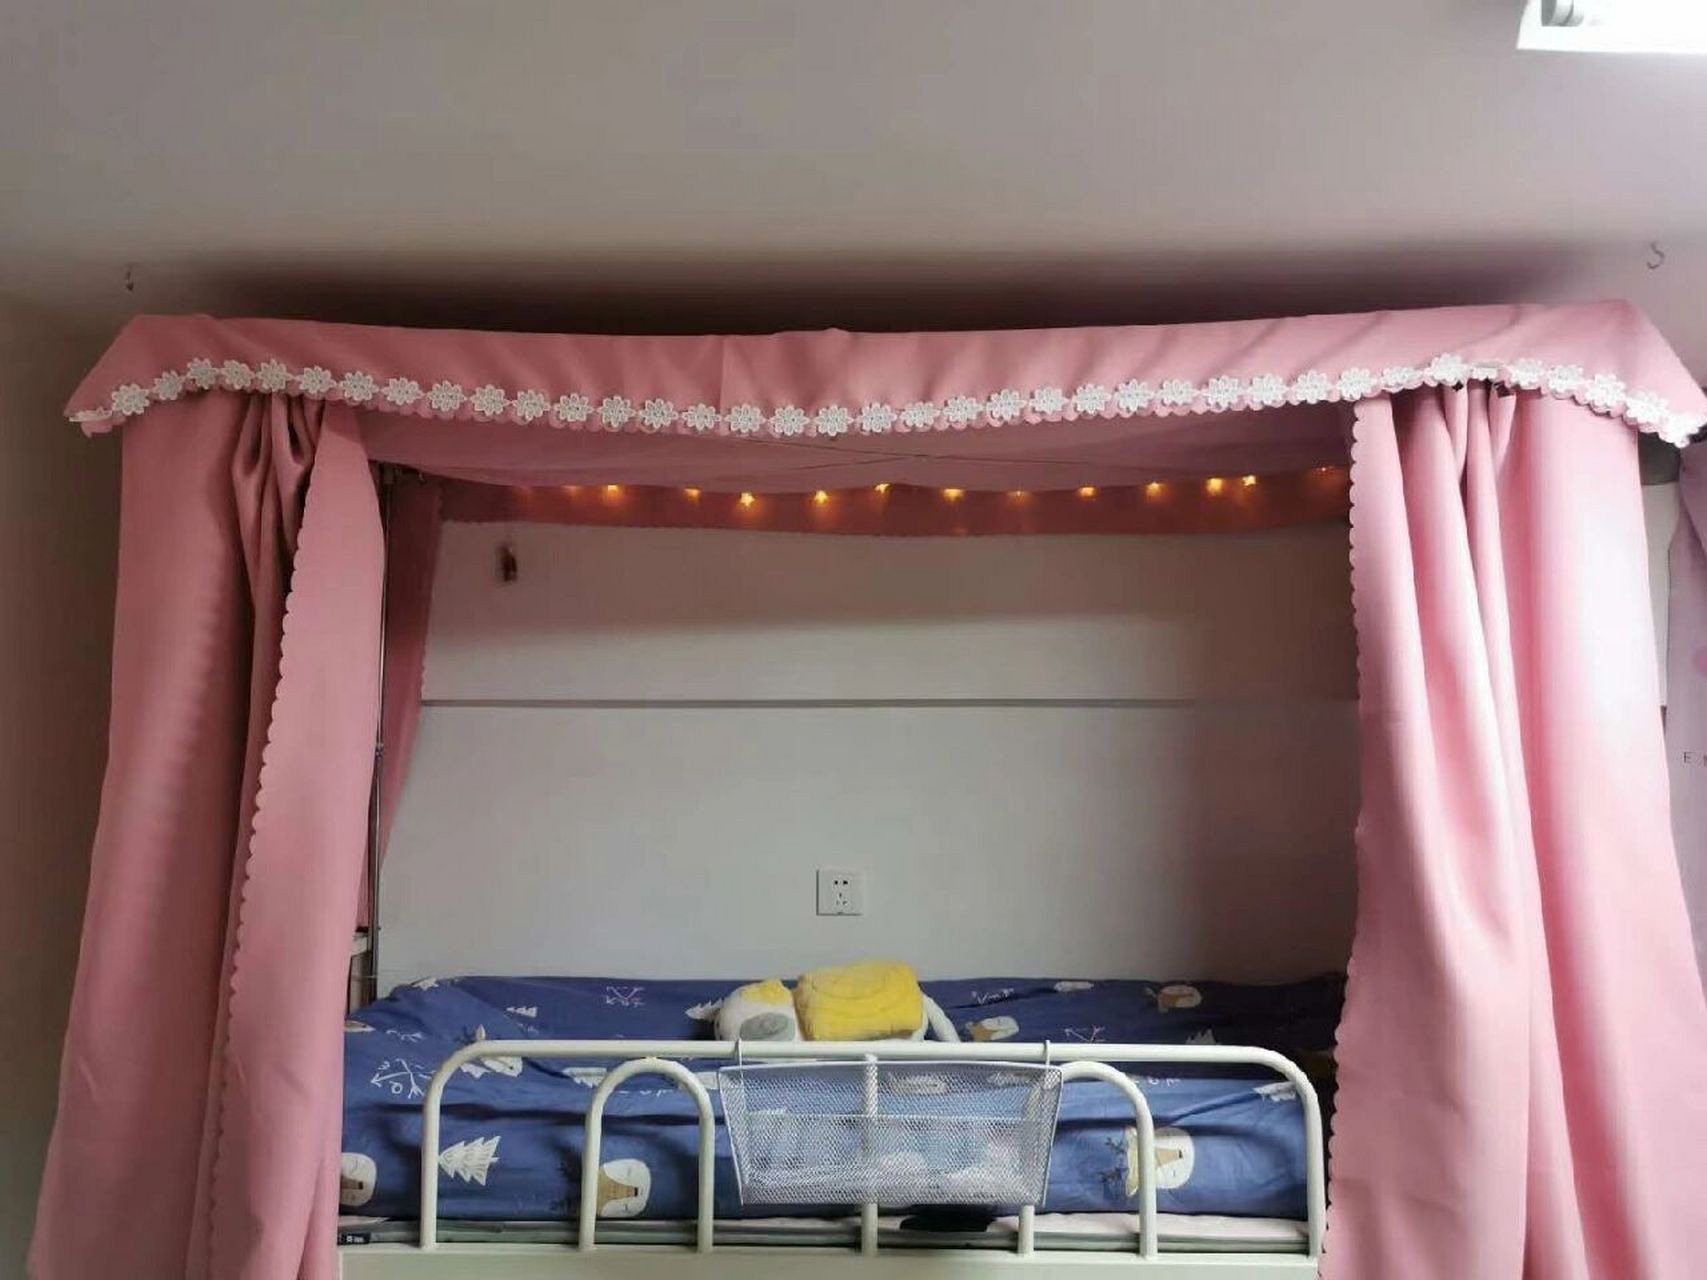 武汉学院宿舍寝室图片